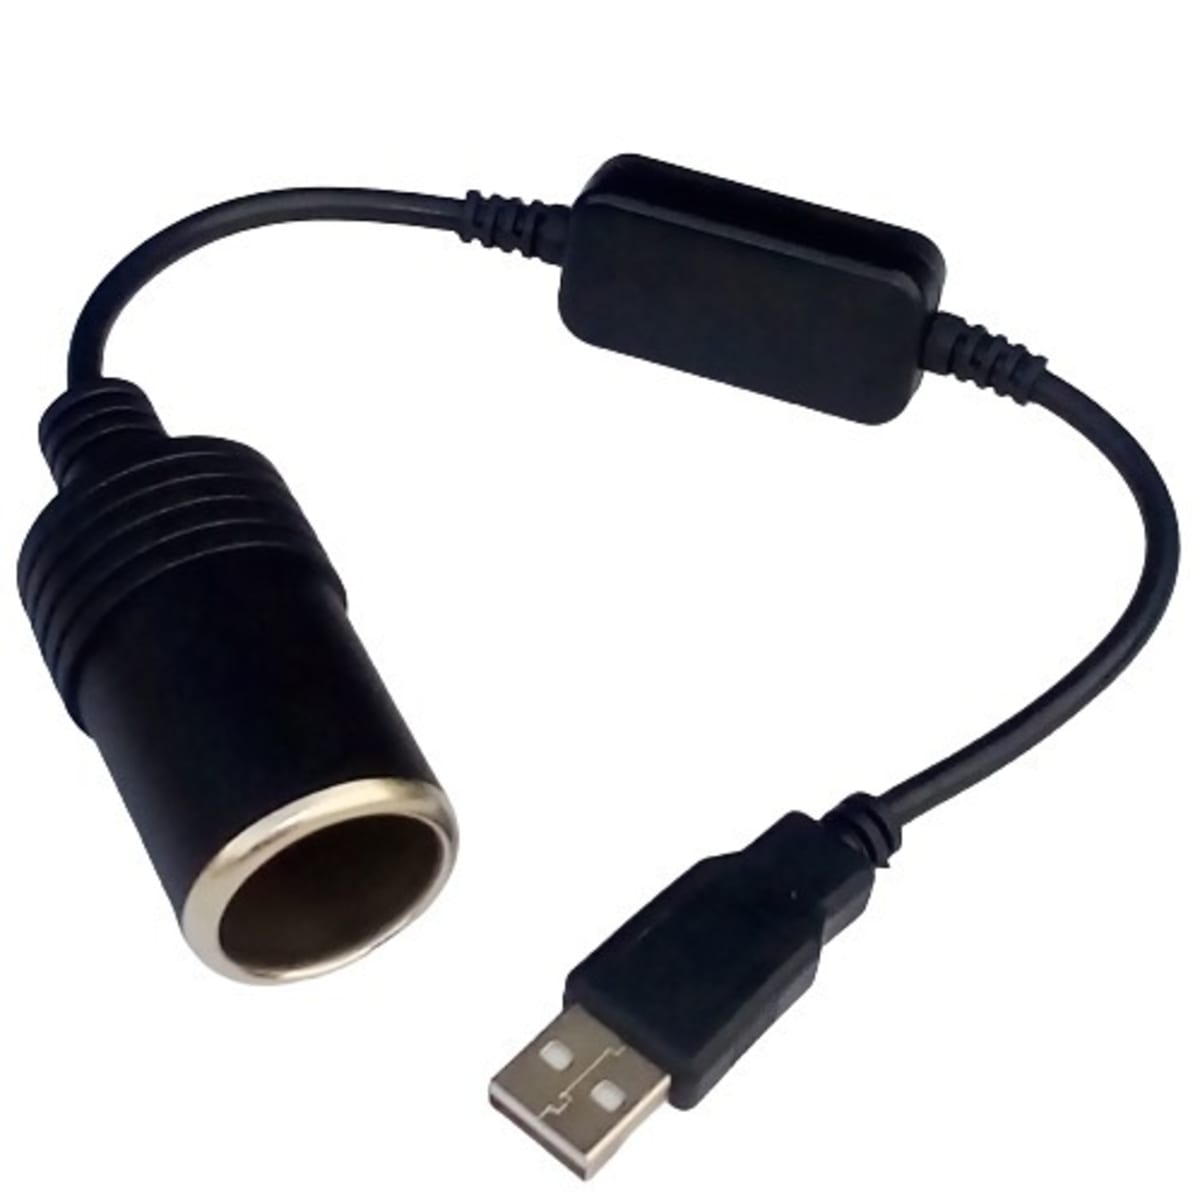 Inverter converter from USB 5v to 12v car cigarette lighter